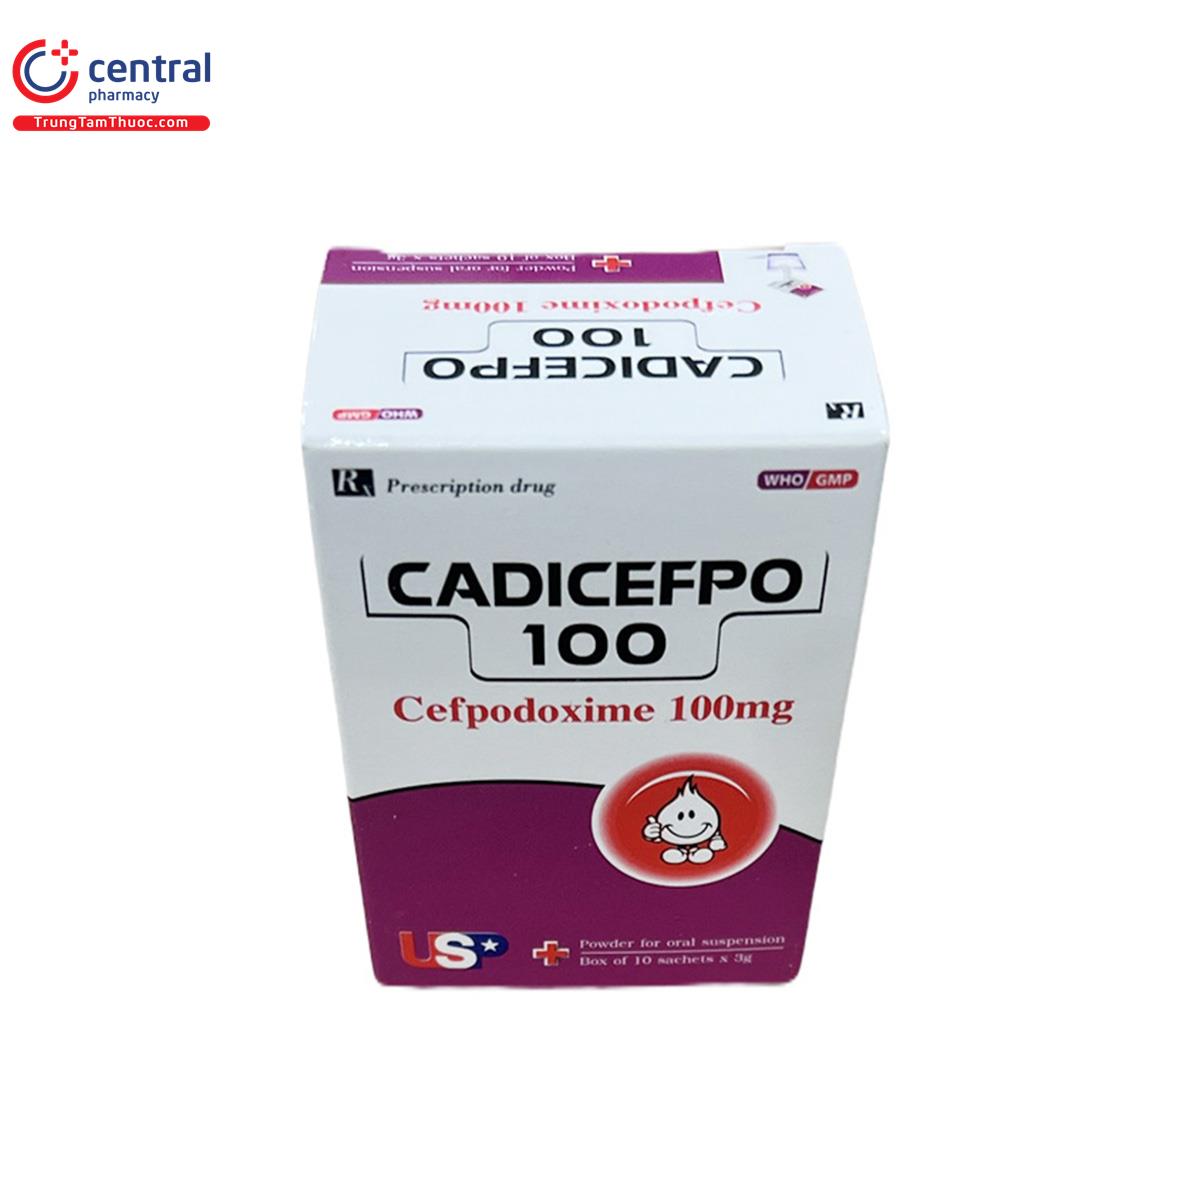 cadicefpo 100 us pharma 2 H3425